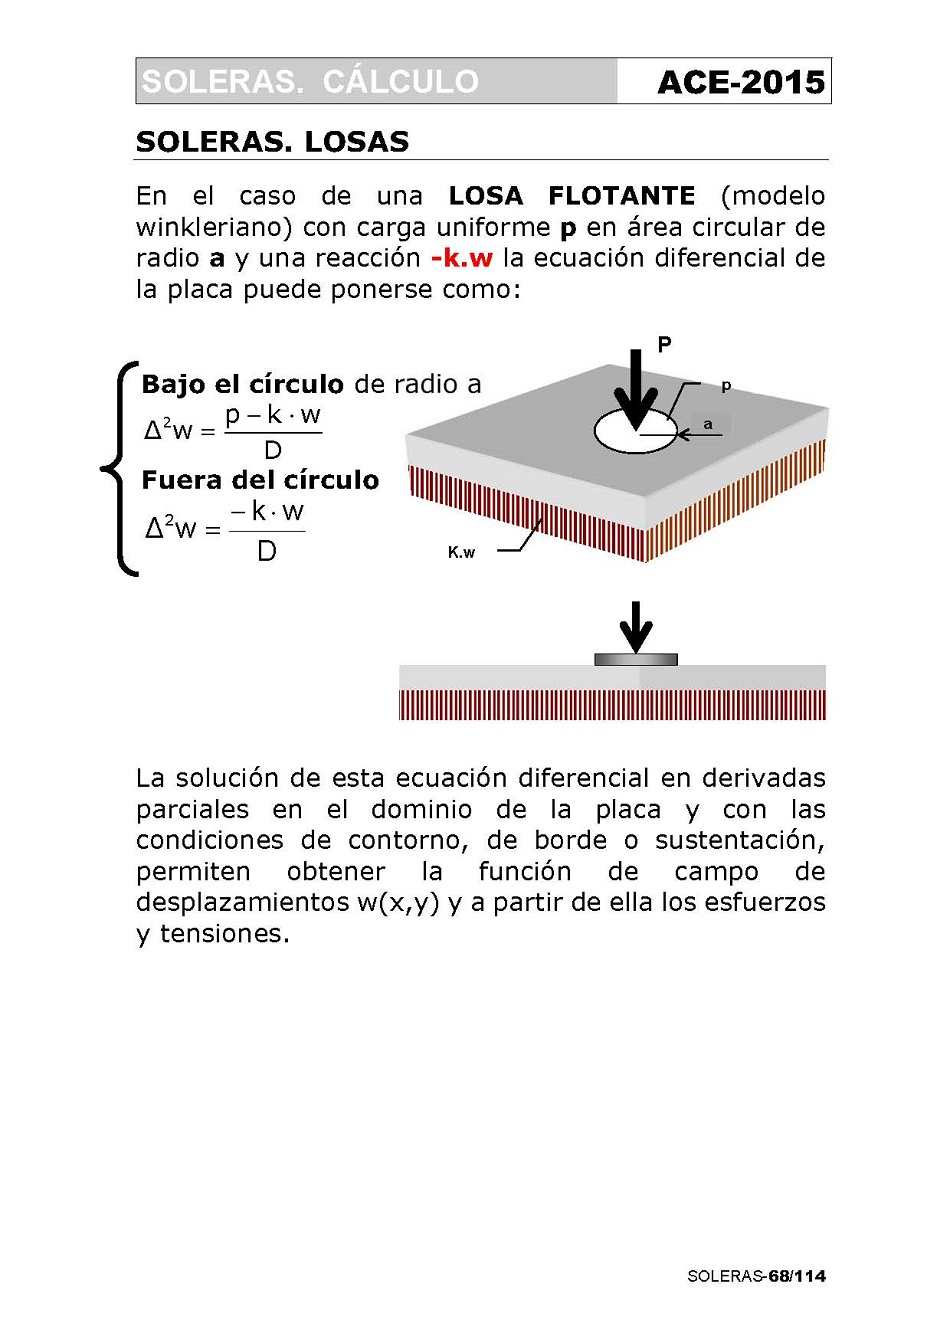 Cálculo de Soleras de Hormigón. Página 68